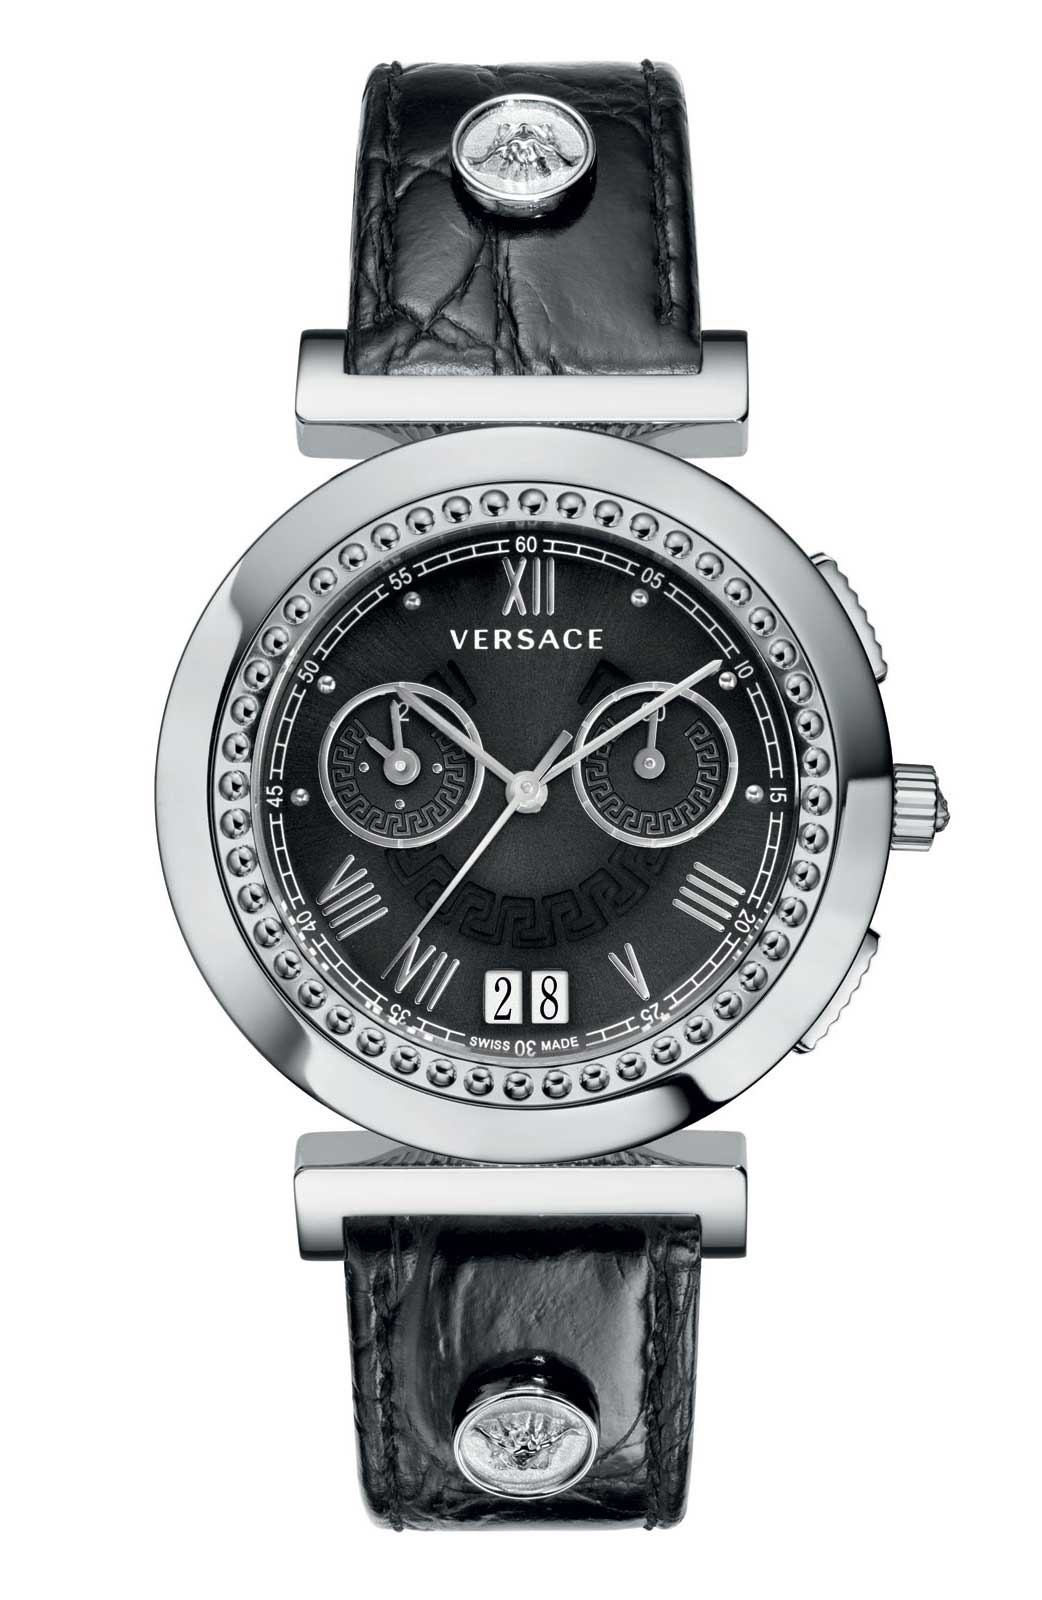 Versace QUARTZ watch 5020B BLACK